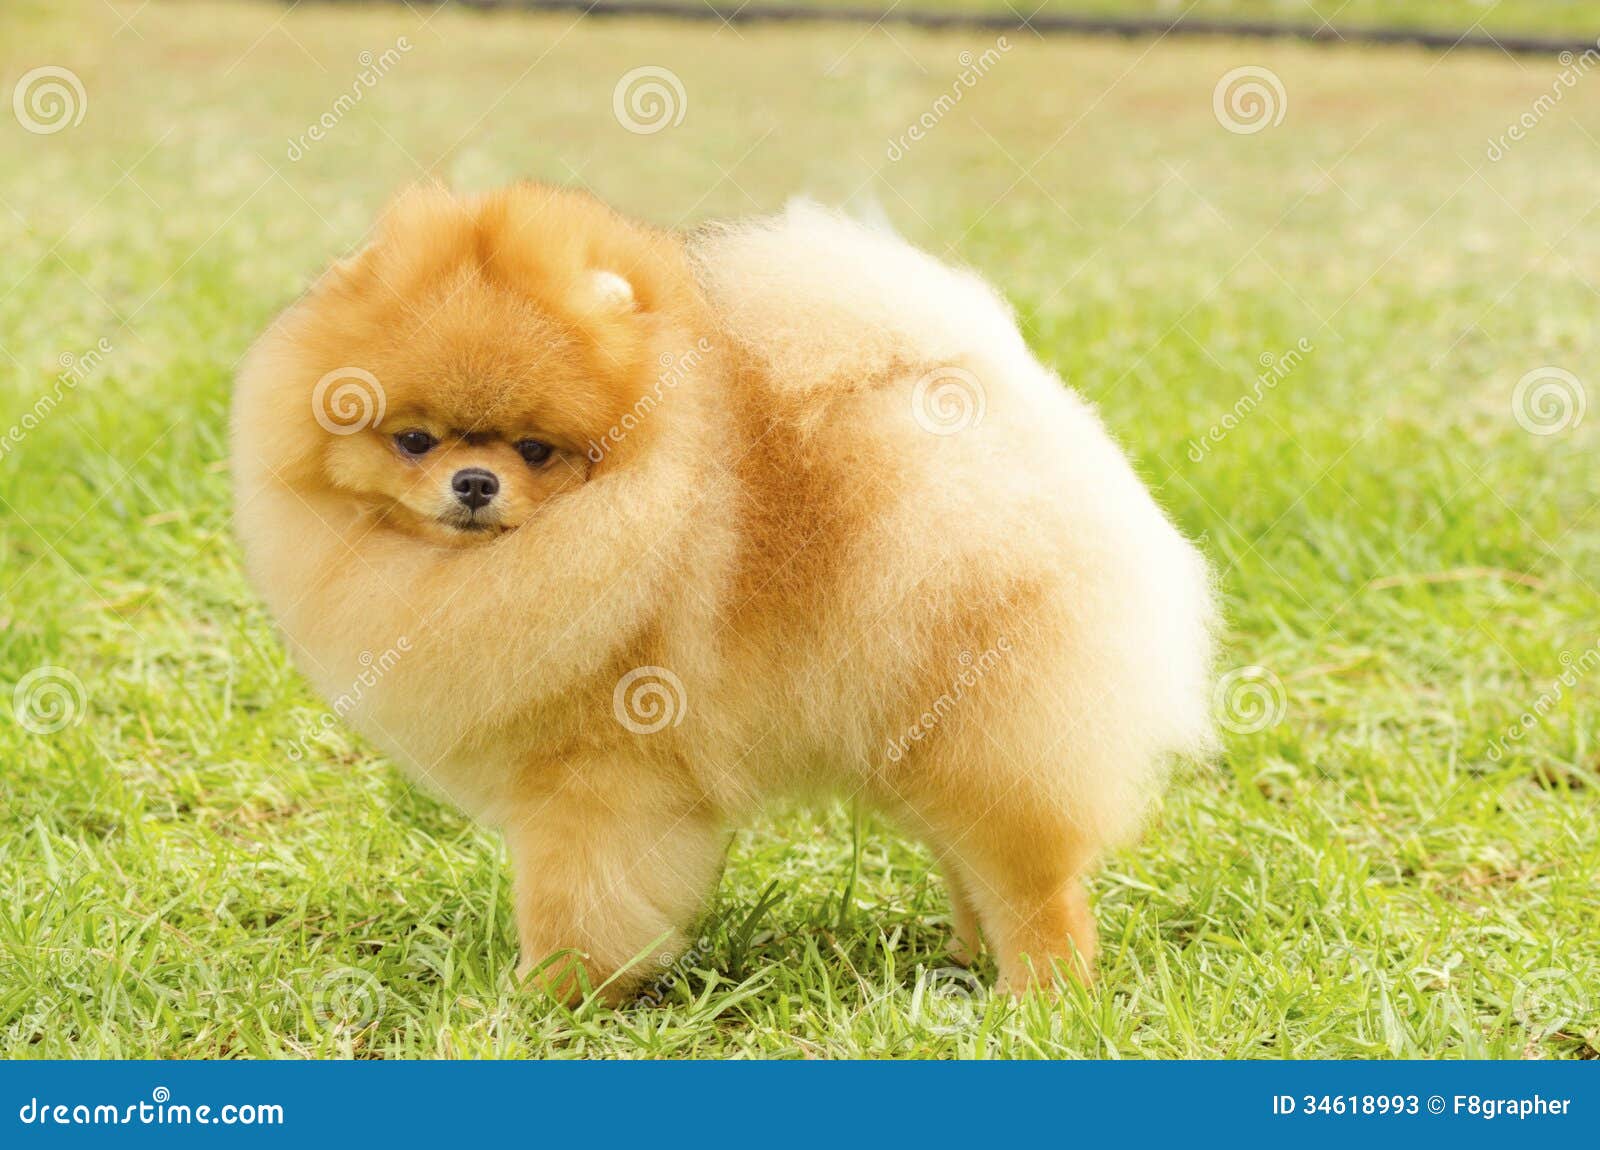 Pomeranian Fotos - & Royalty-Free Stock Fotos von Dreamstime